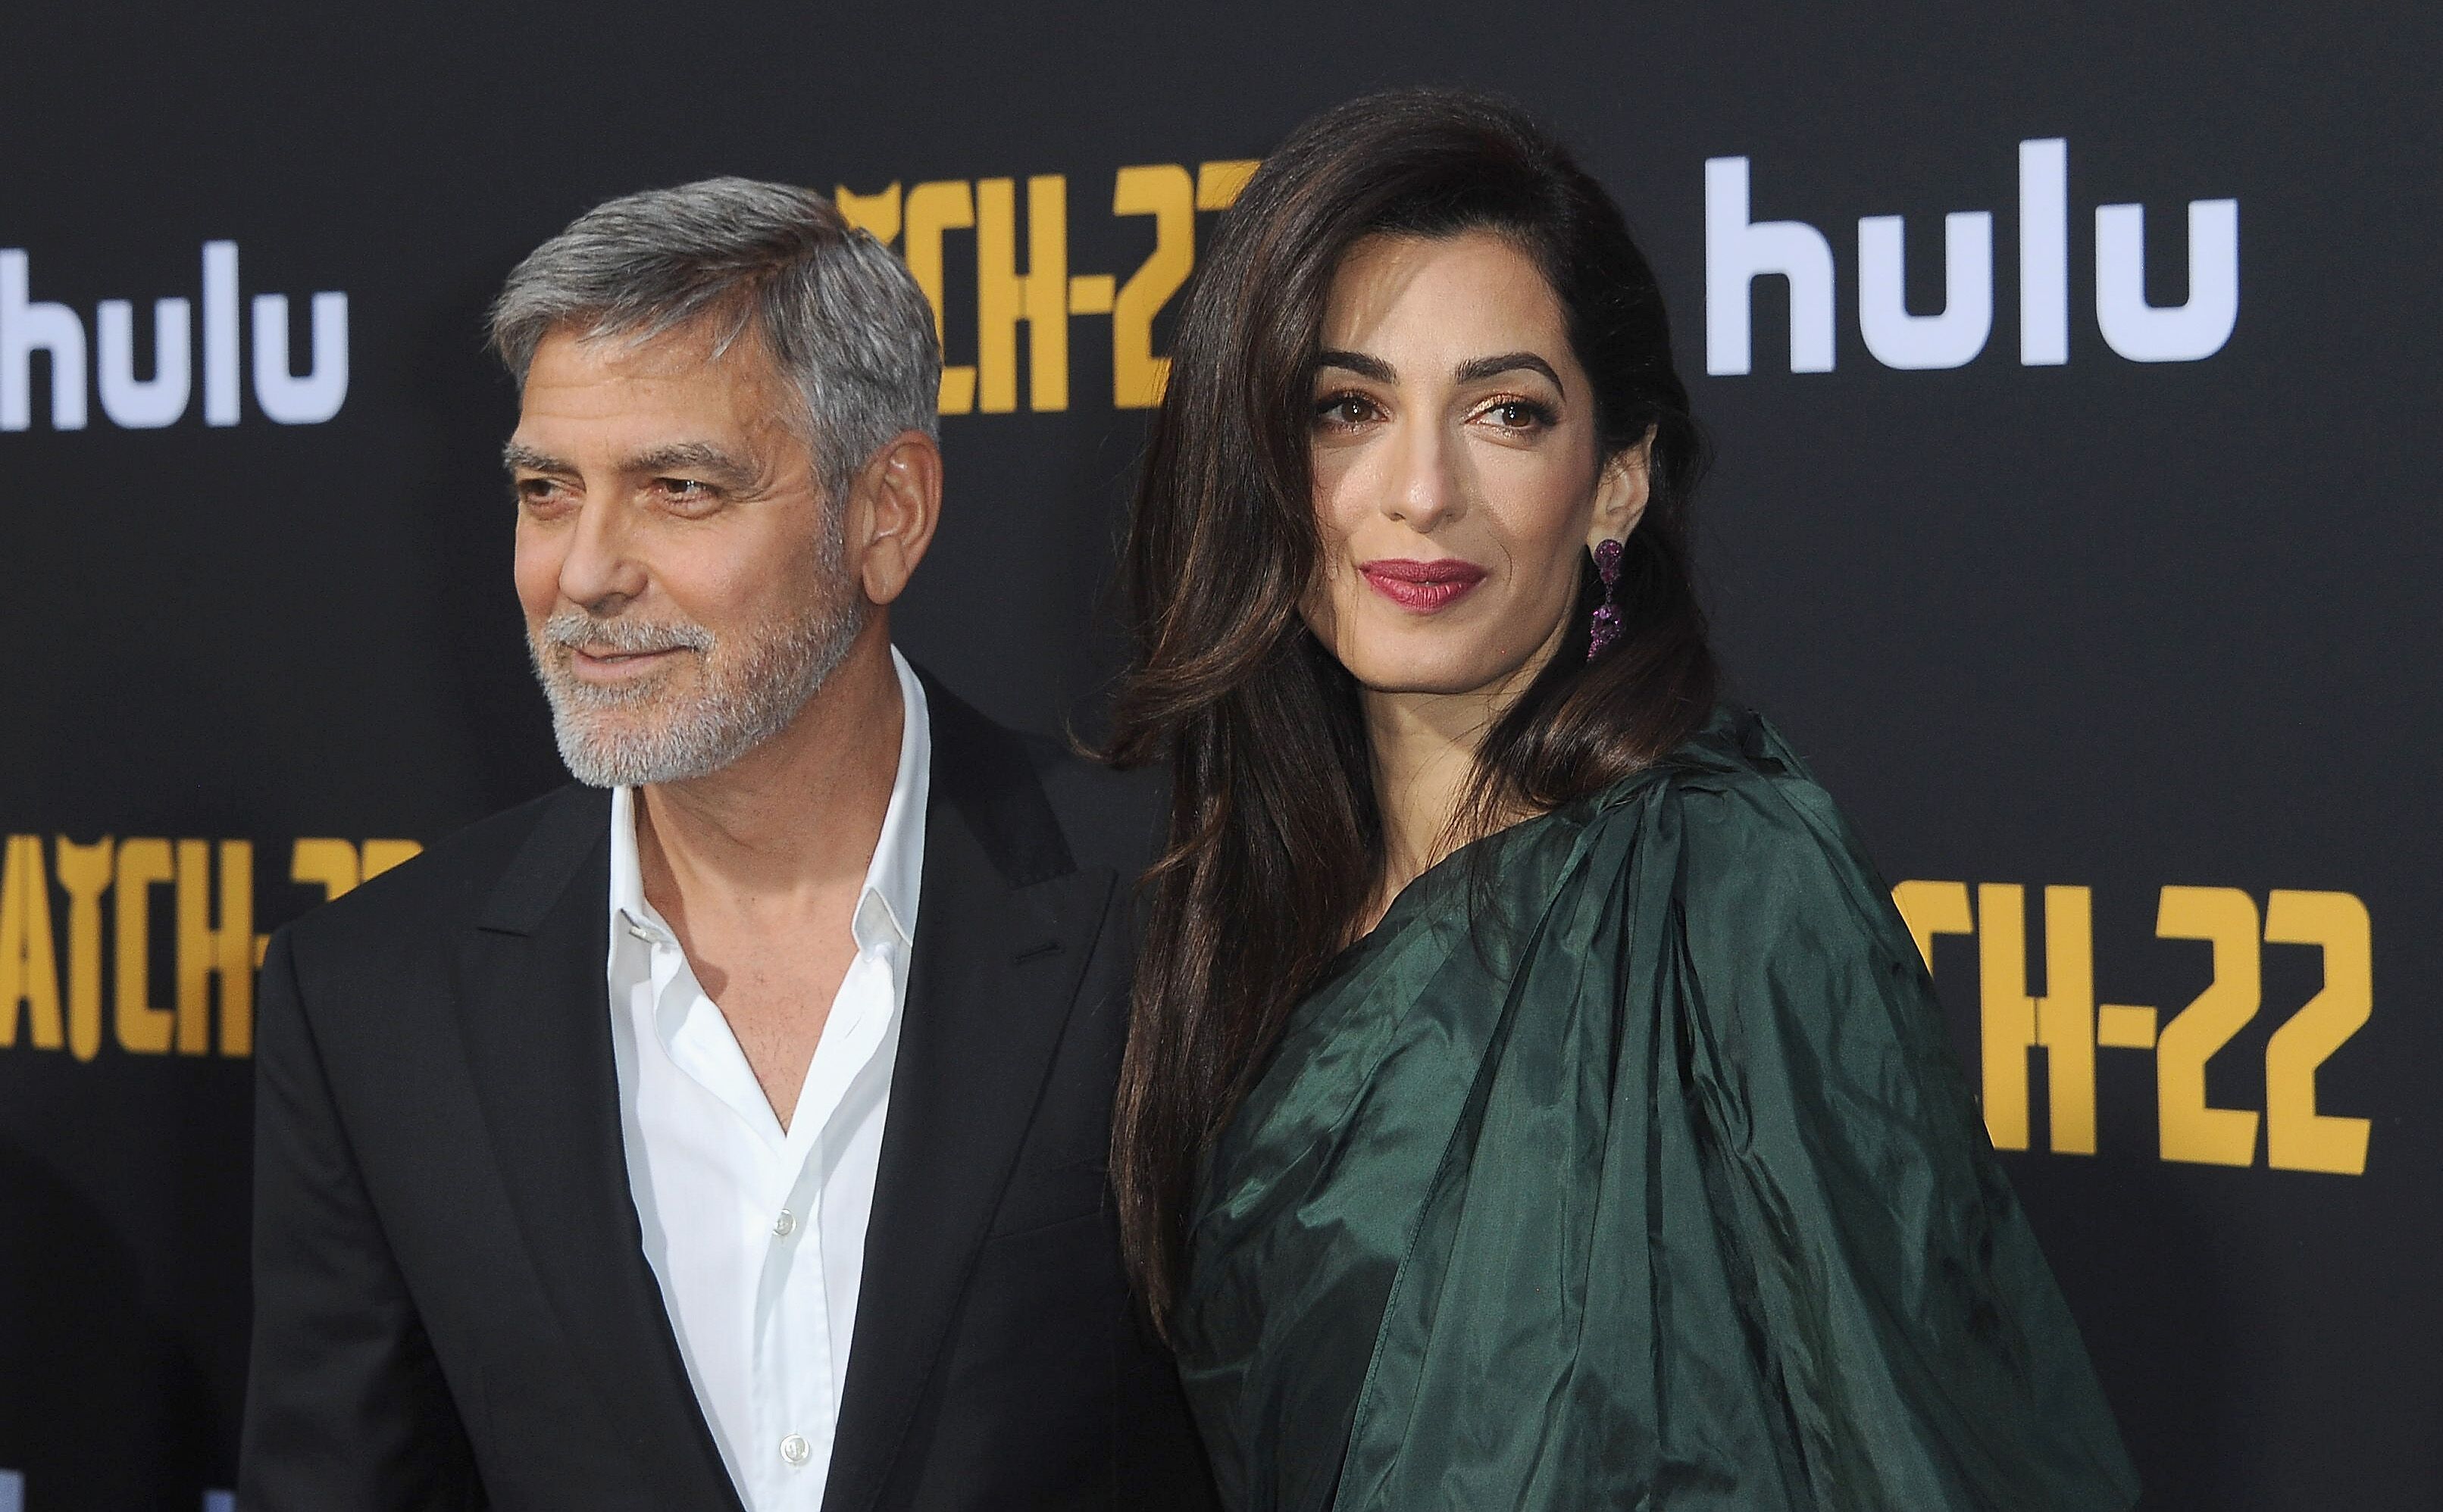 George und Amal Clooney bei der Hollywood-Premiere von "Catch-22" im Mai 2019. | Quelle: Getty Images